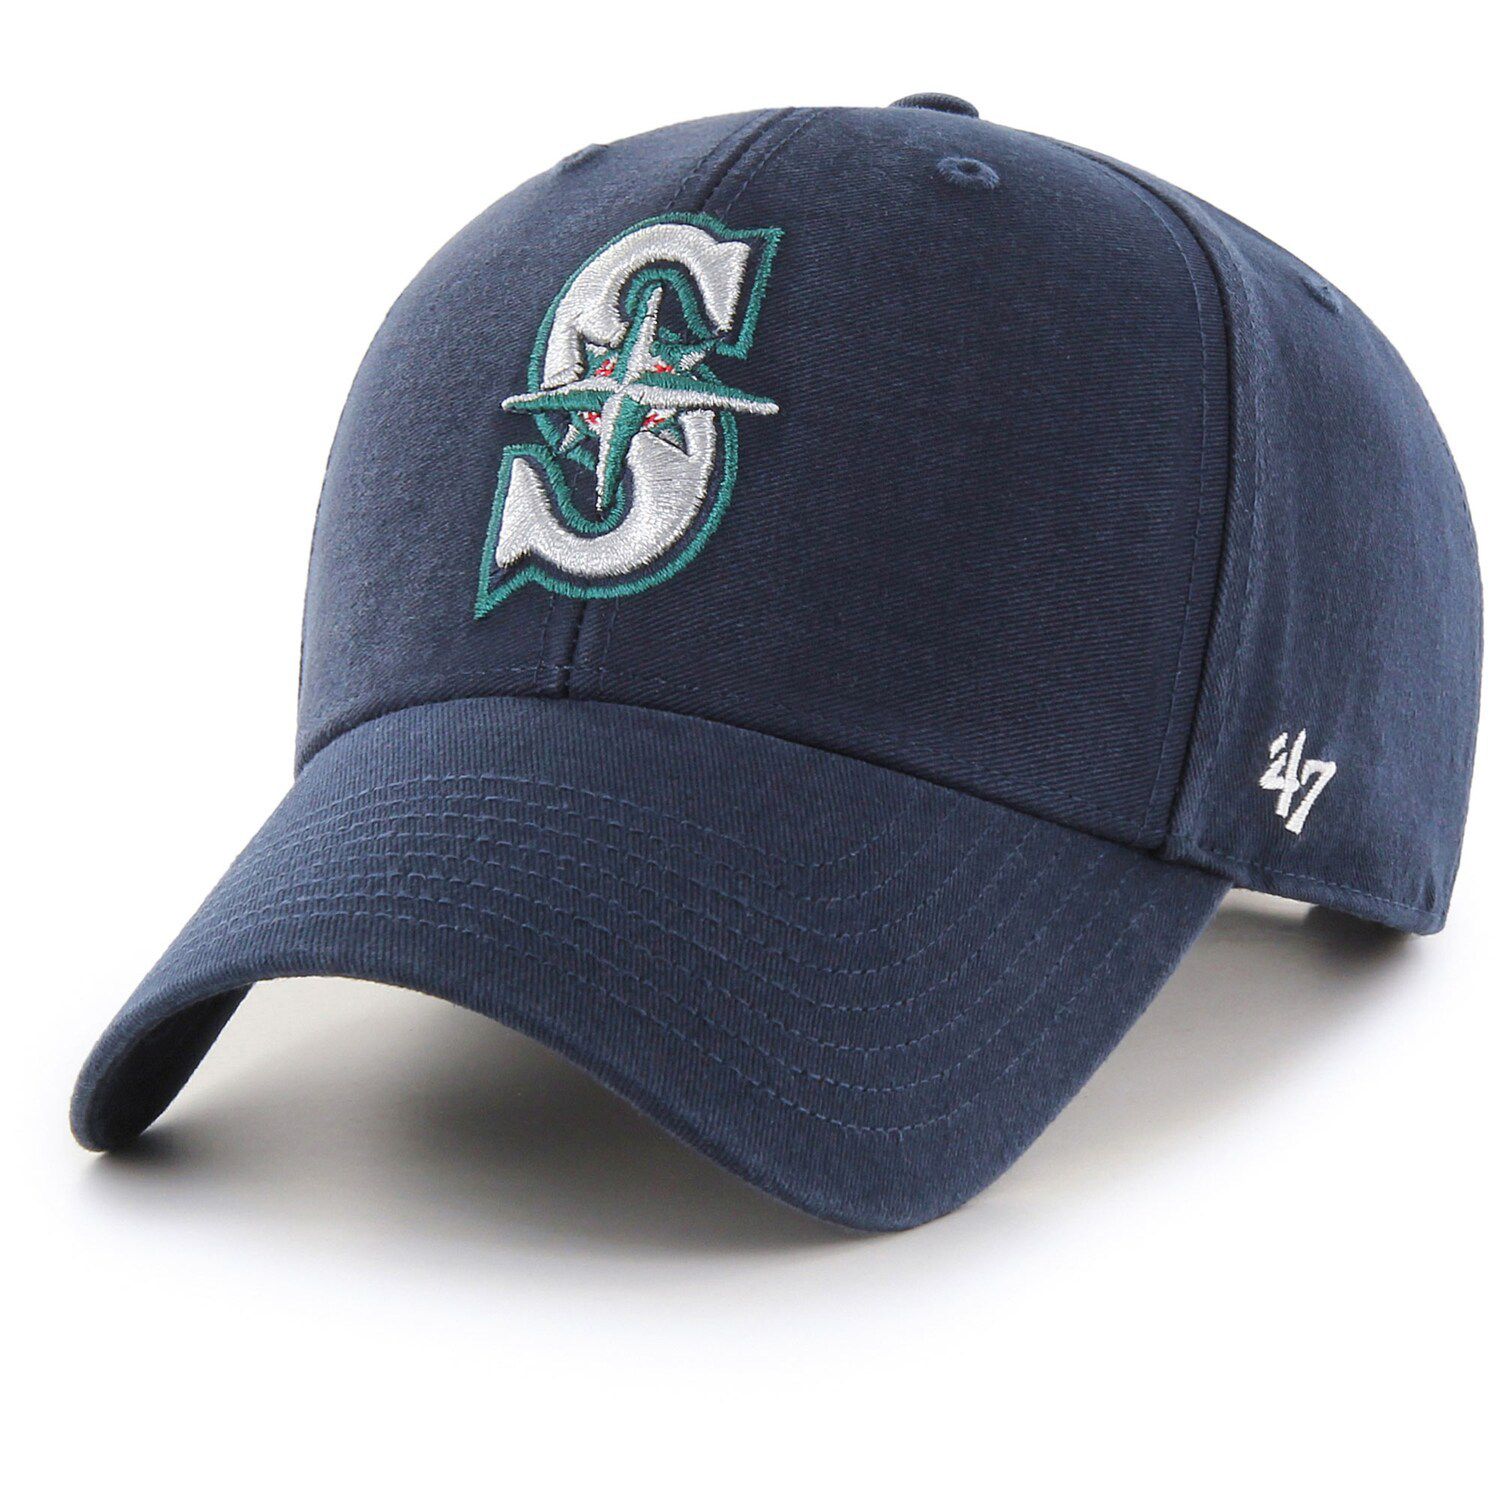 Image for Unbranded Men's '47 Navy Seattle Mariners Legend MVP Adjustable Hat at Kohl's.